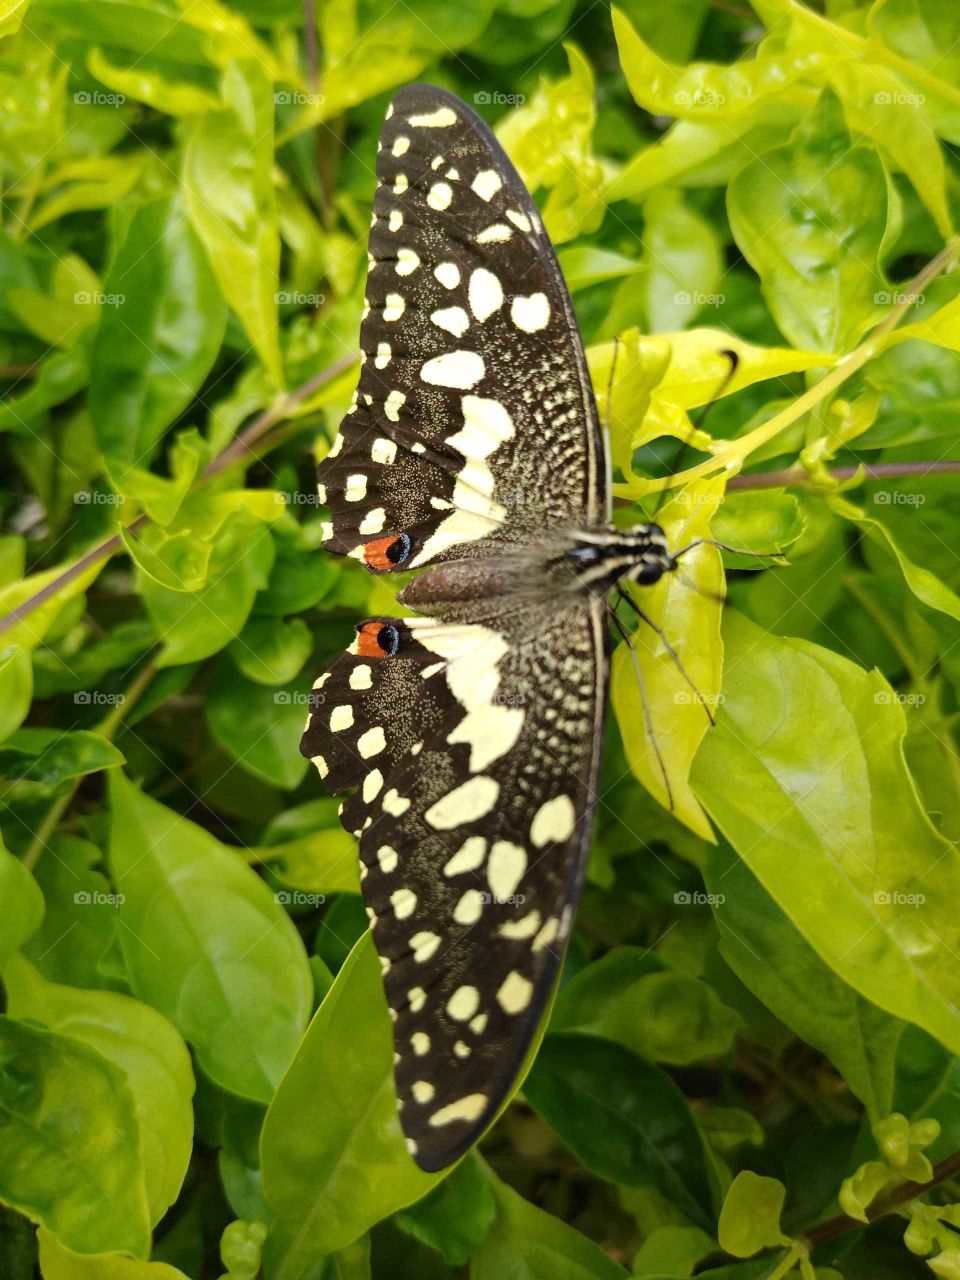 a beautiful butterfly in my garden